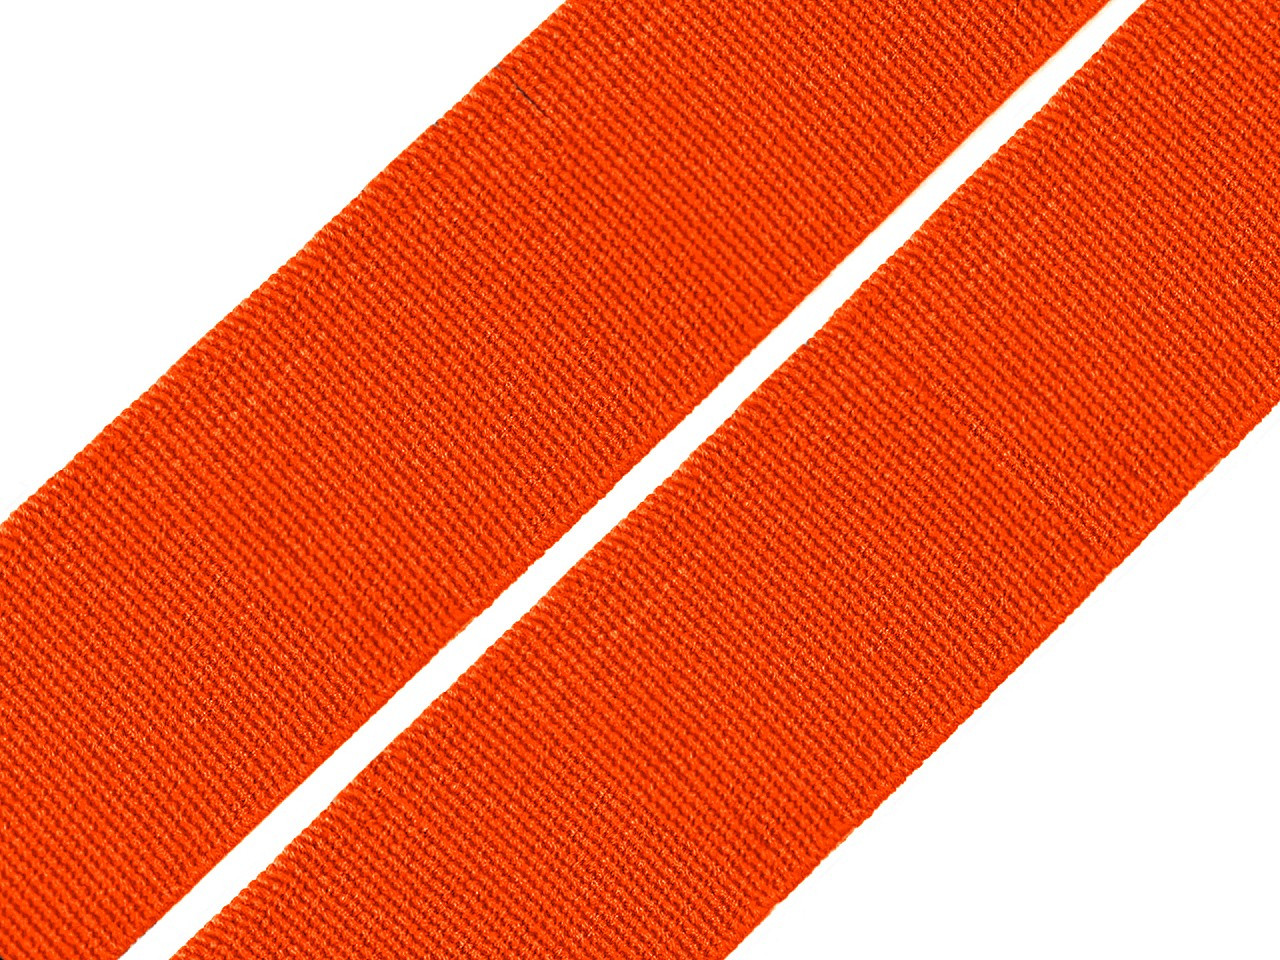 Pruženka hladká šíře 20 mm tkaná barevná, barva 4301 oranžová neon